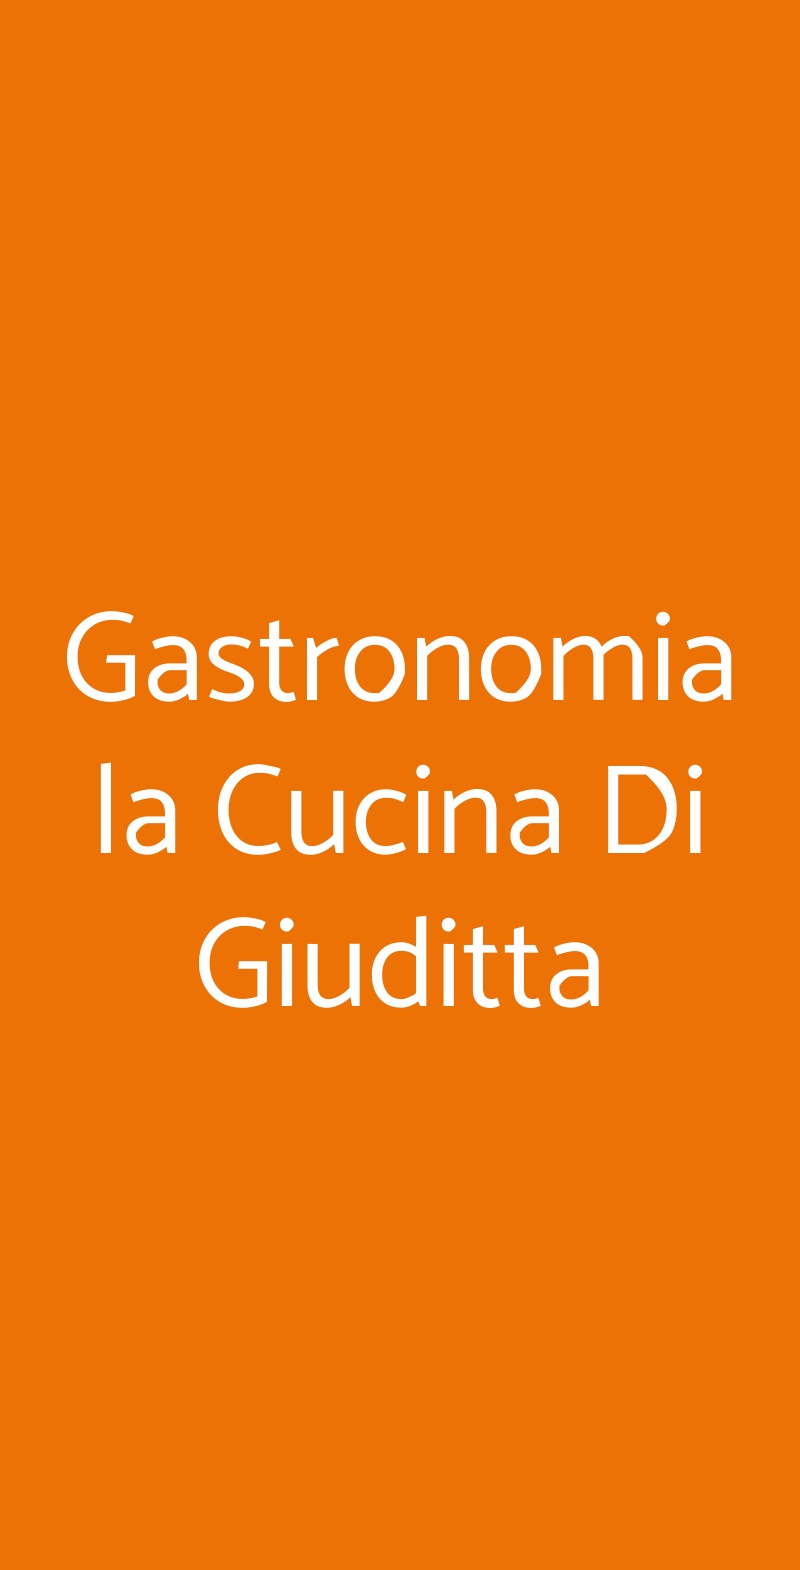 Gastronomia la Cucina Di Giuditta Genova menù 1 pagina